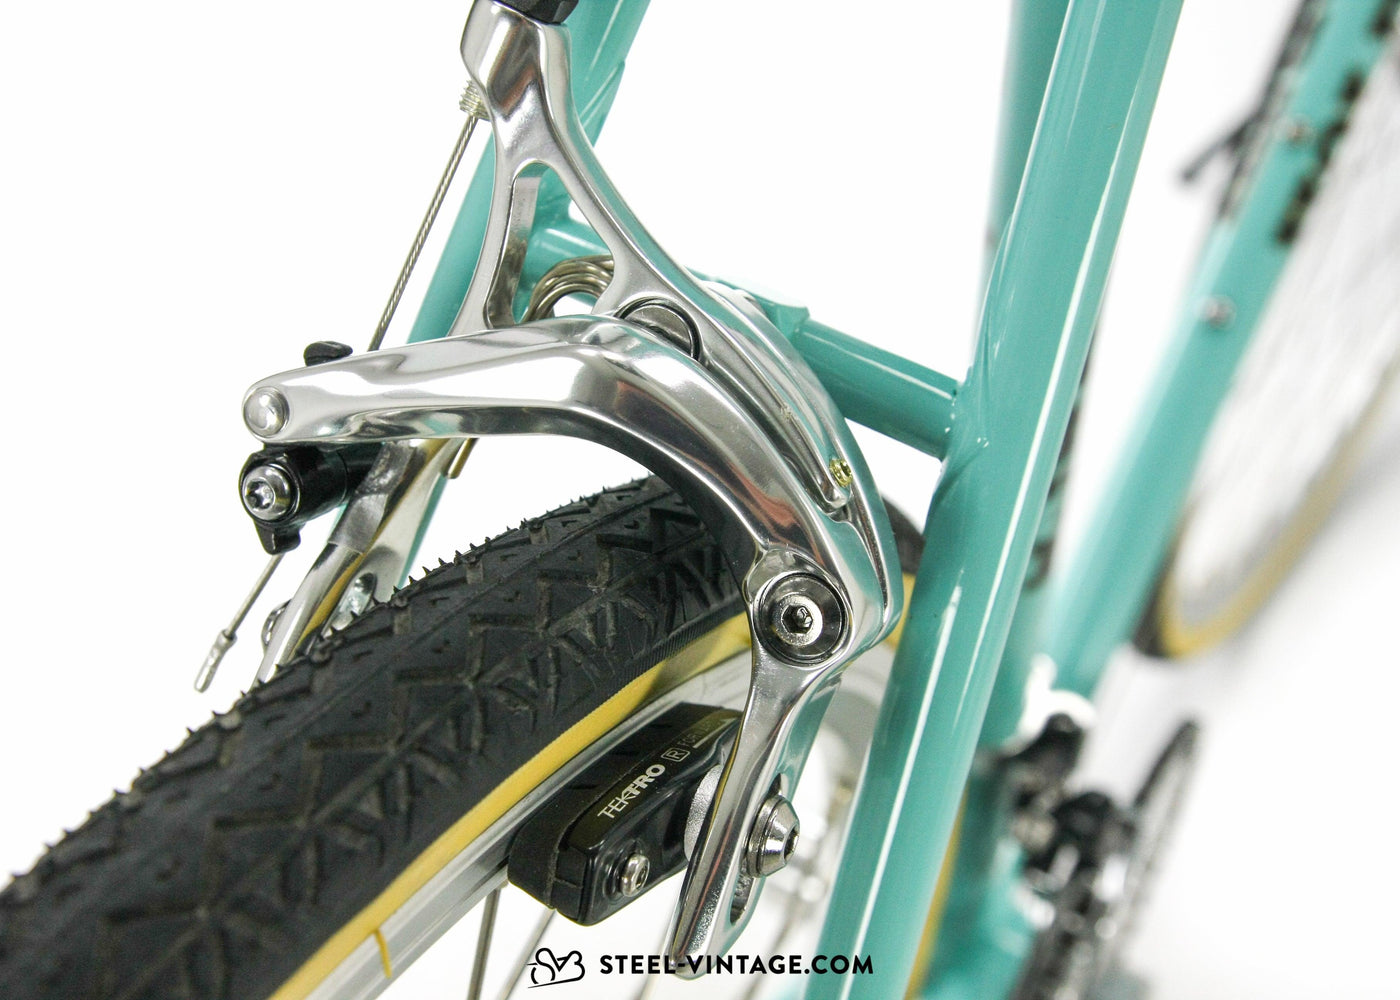 Holdsworth Mistral Eroica Bicycle - Steel Vintage Bikes